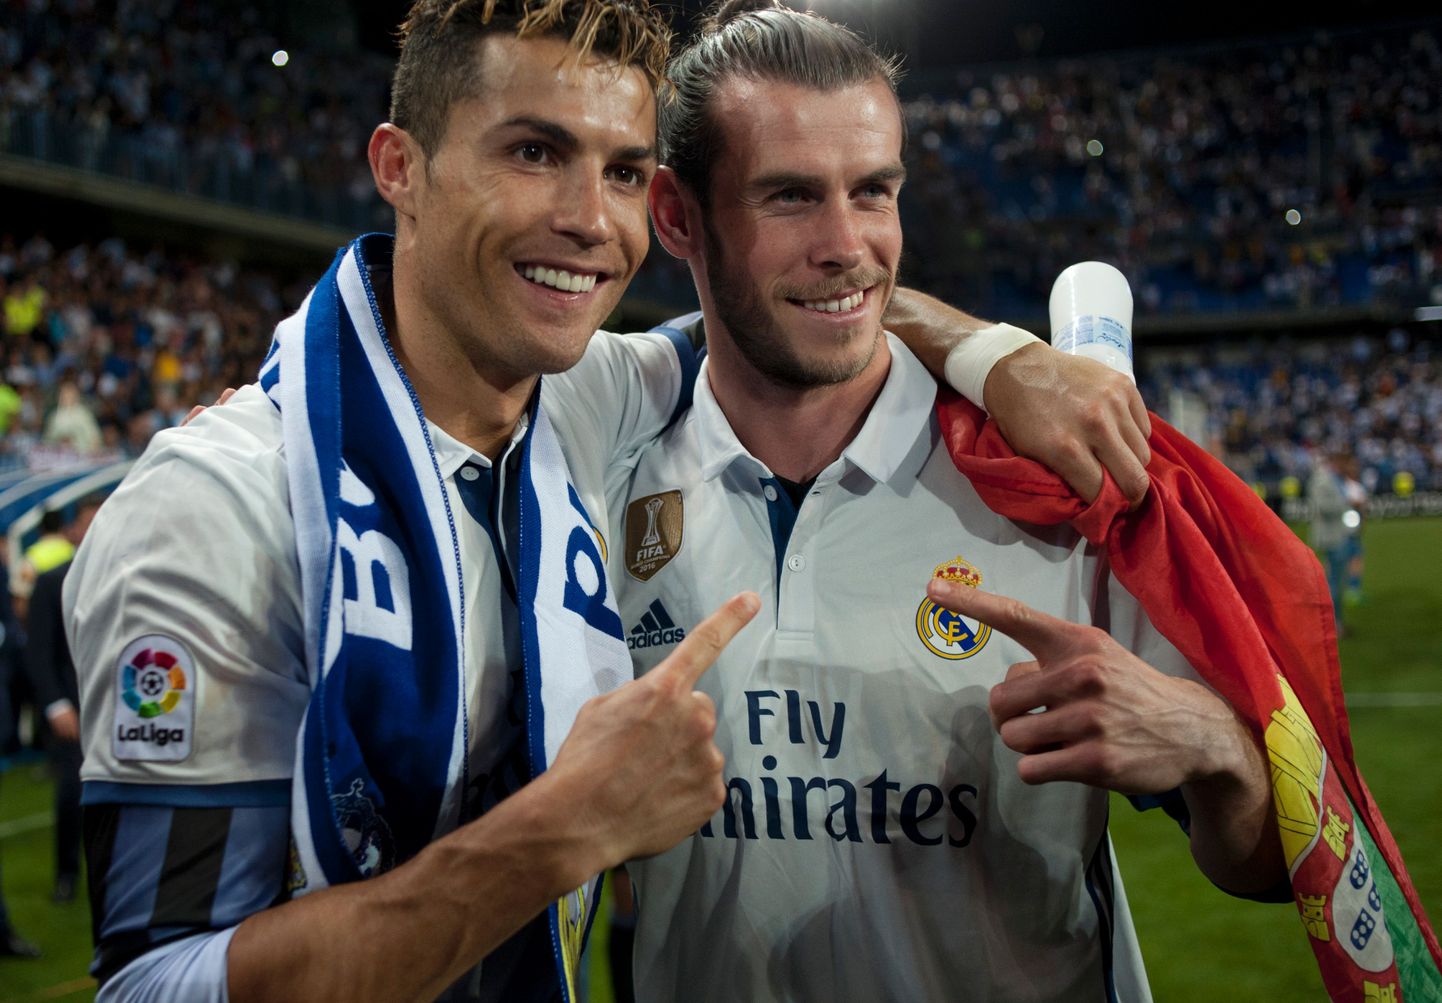 Veel mõned aastad tagasi jagasid Cristiano Ronaldo (vasakul) ja Gareth Bale vennalikult Madridi Realis väljakut. Nüüd on meestel ees hoopis teistsugused väljakutsed.